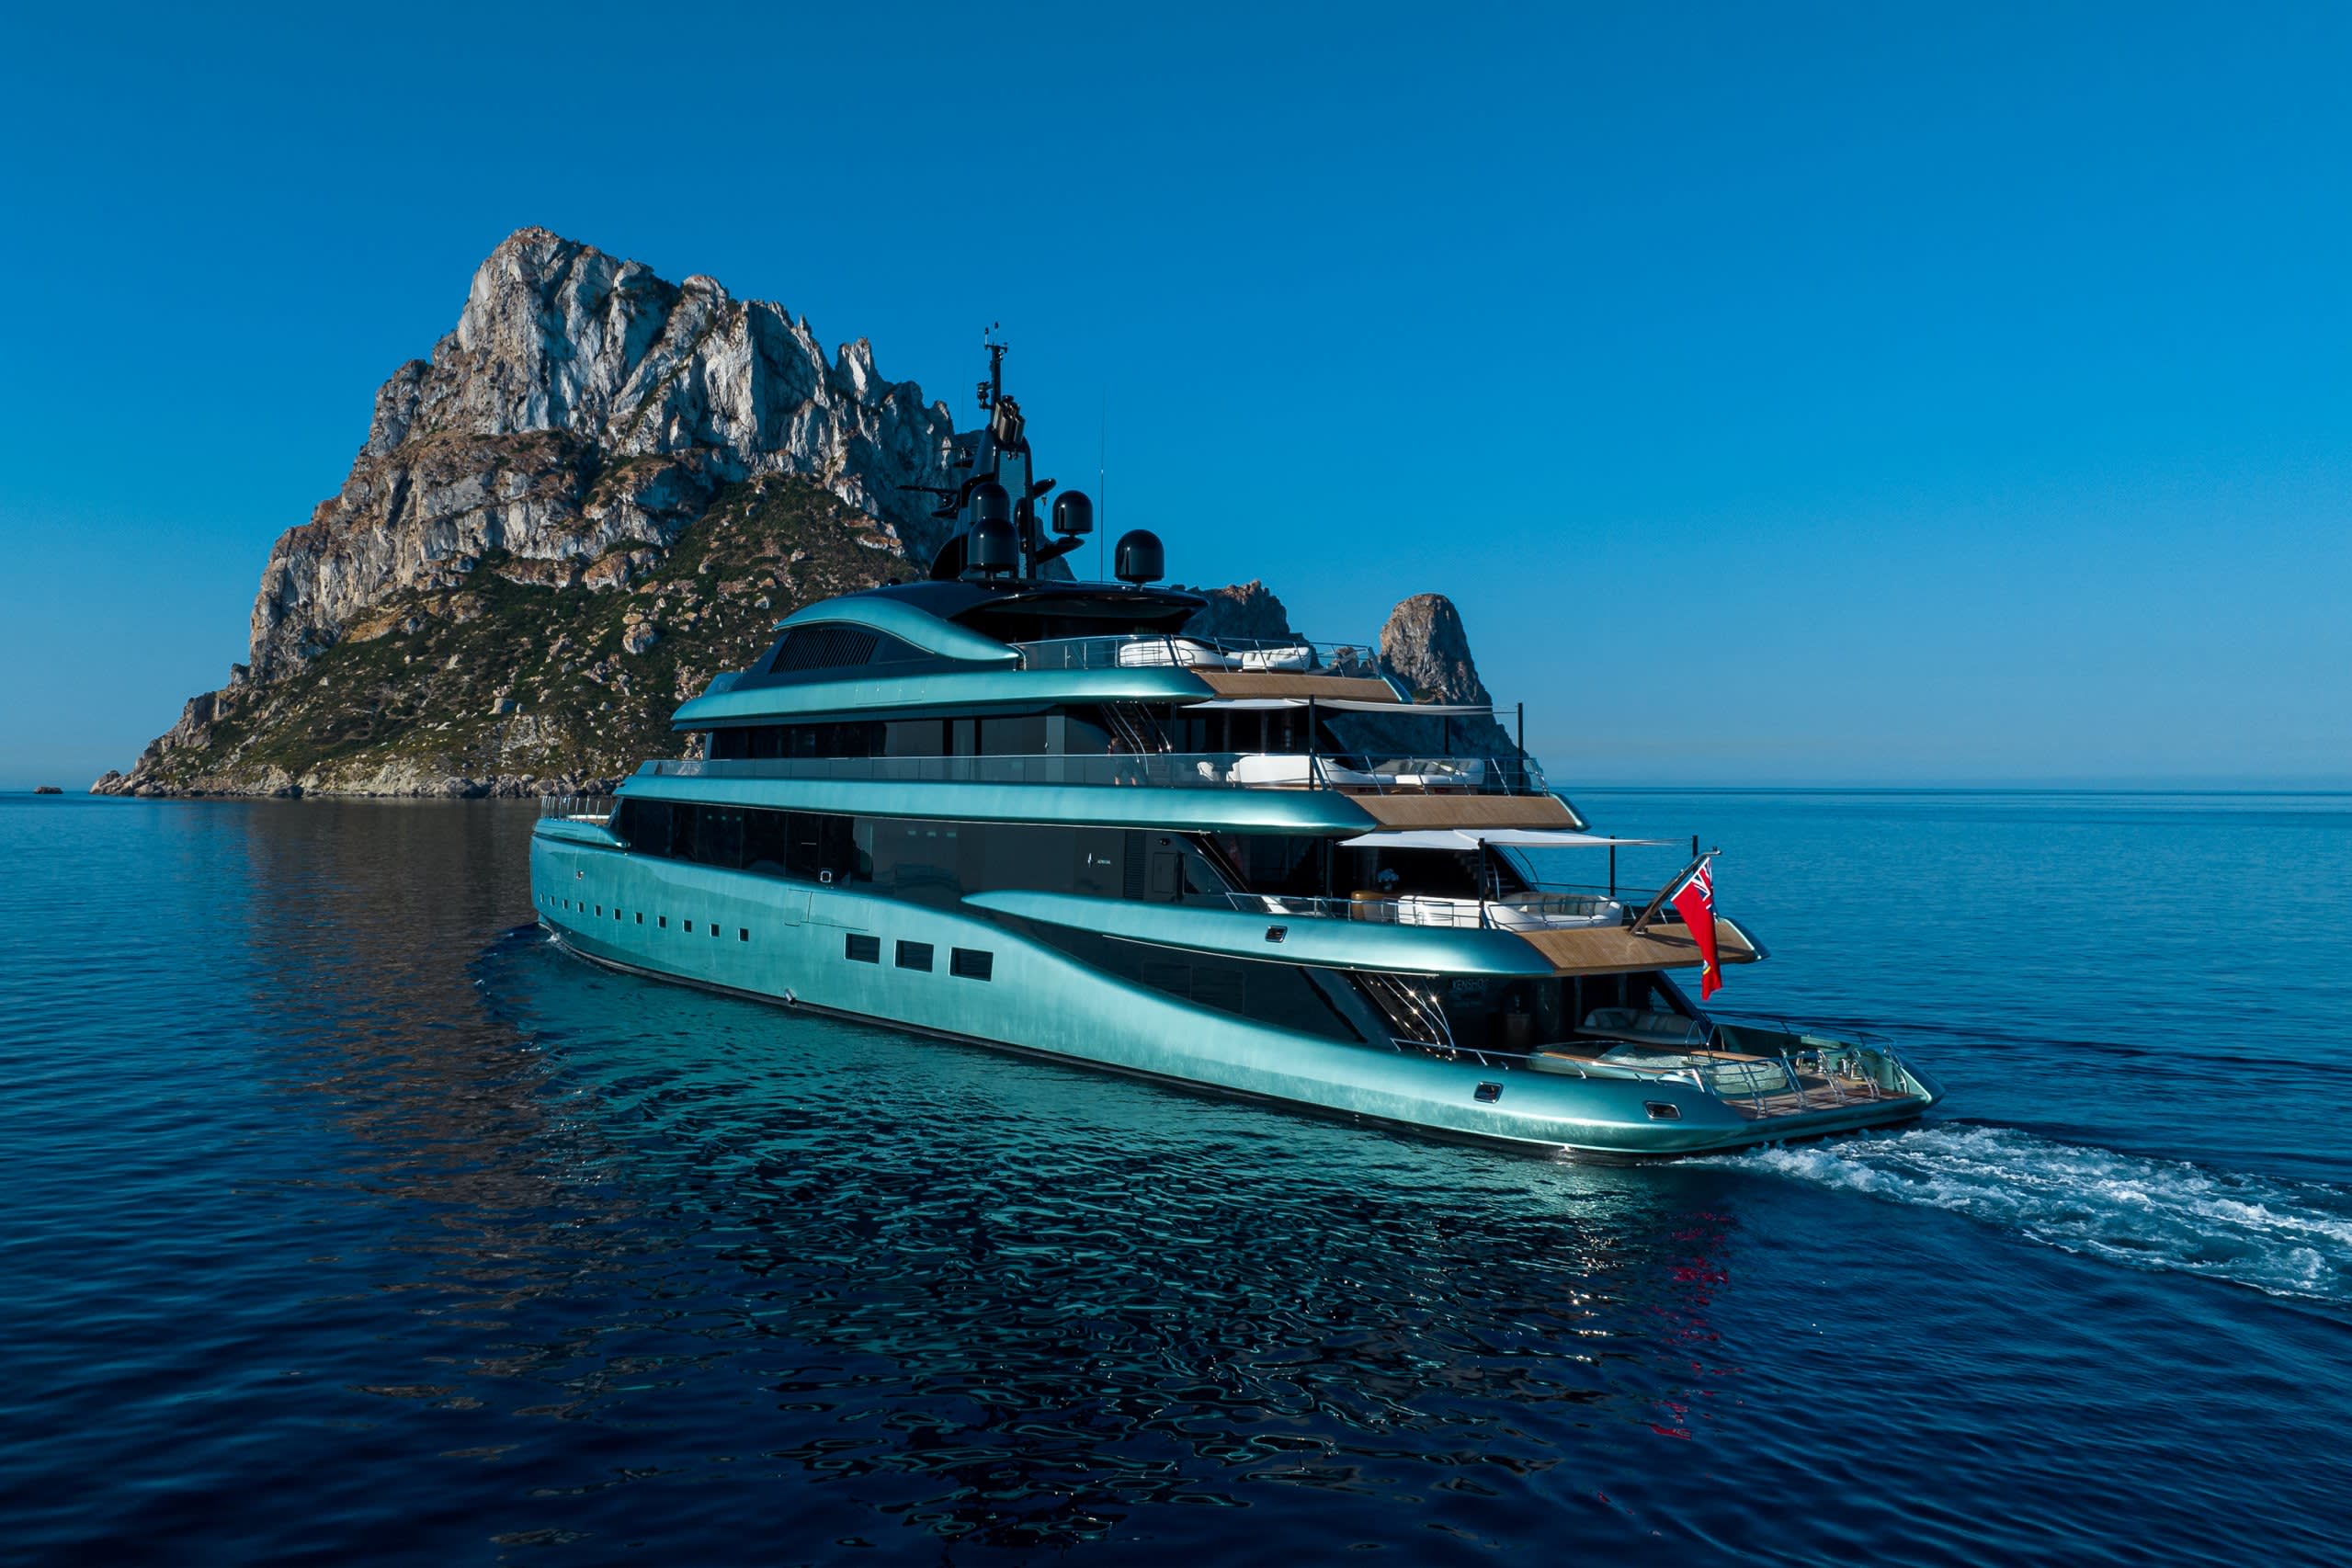 luxus yachting